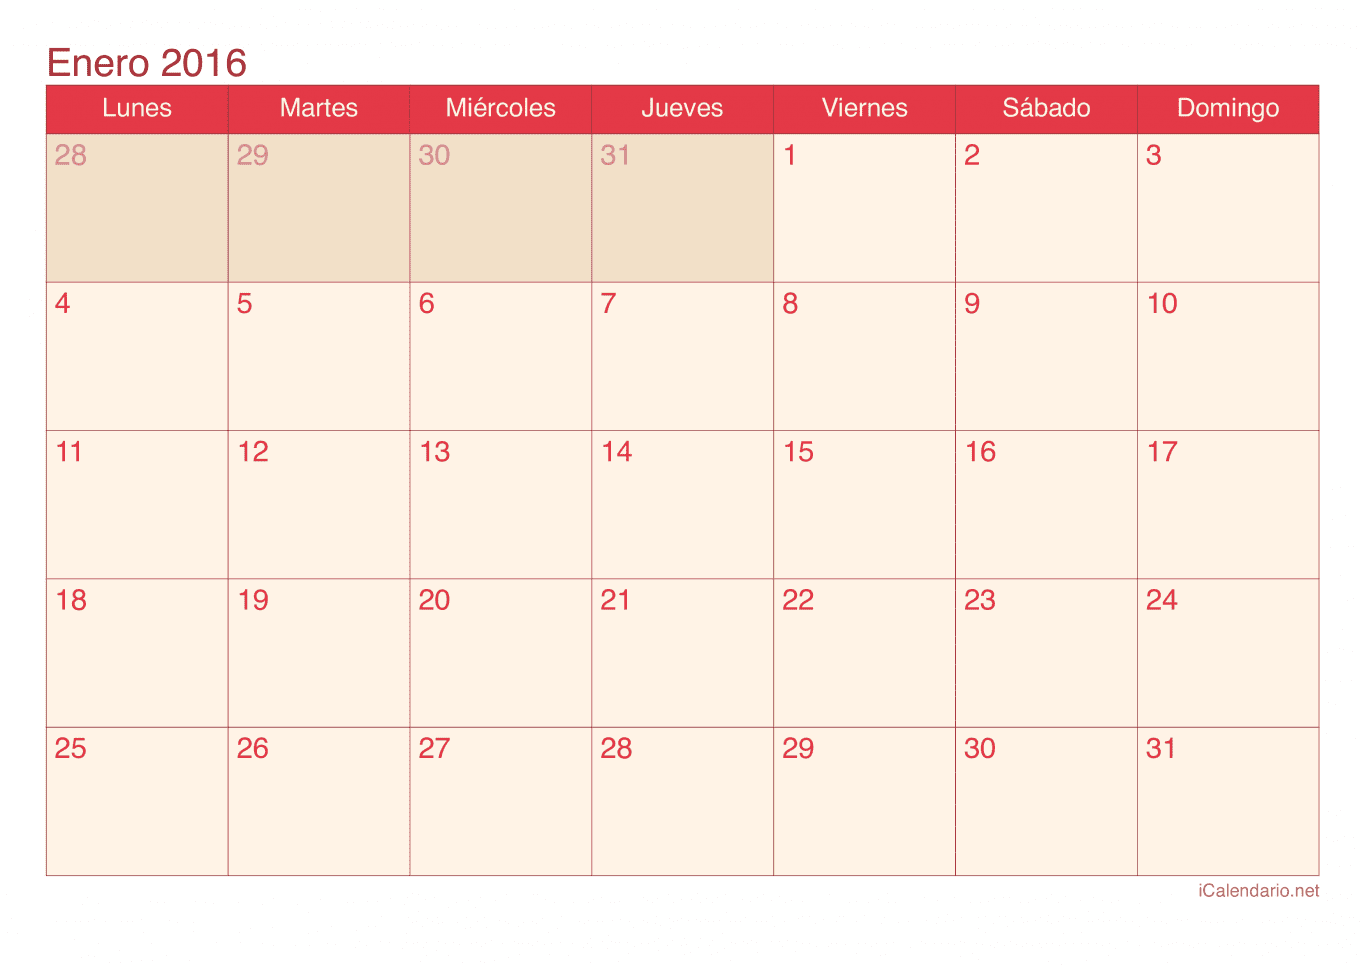 Calendario de enero 2016 - Cherry